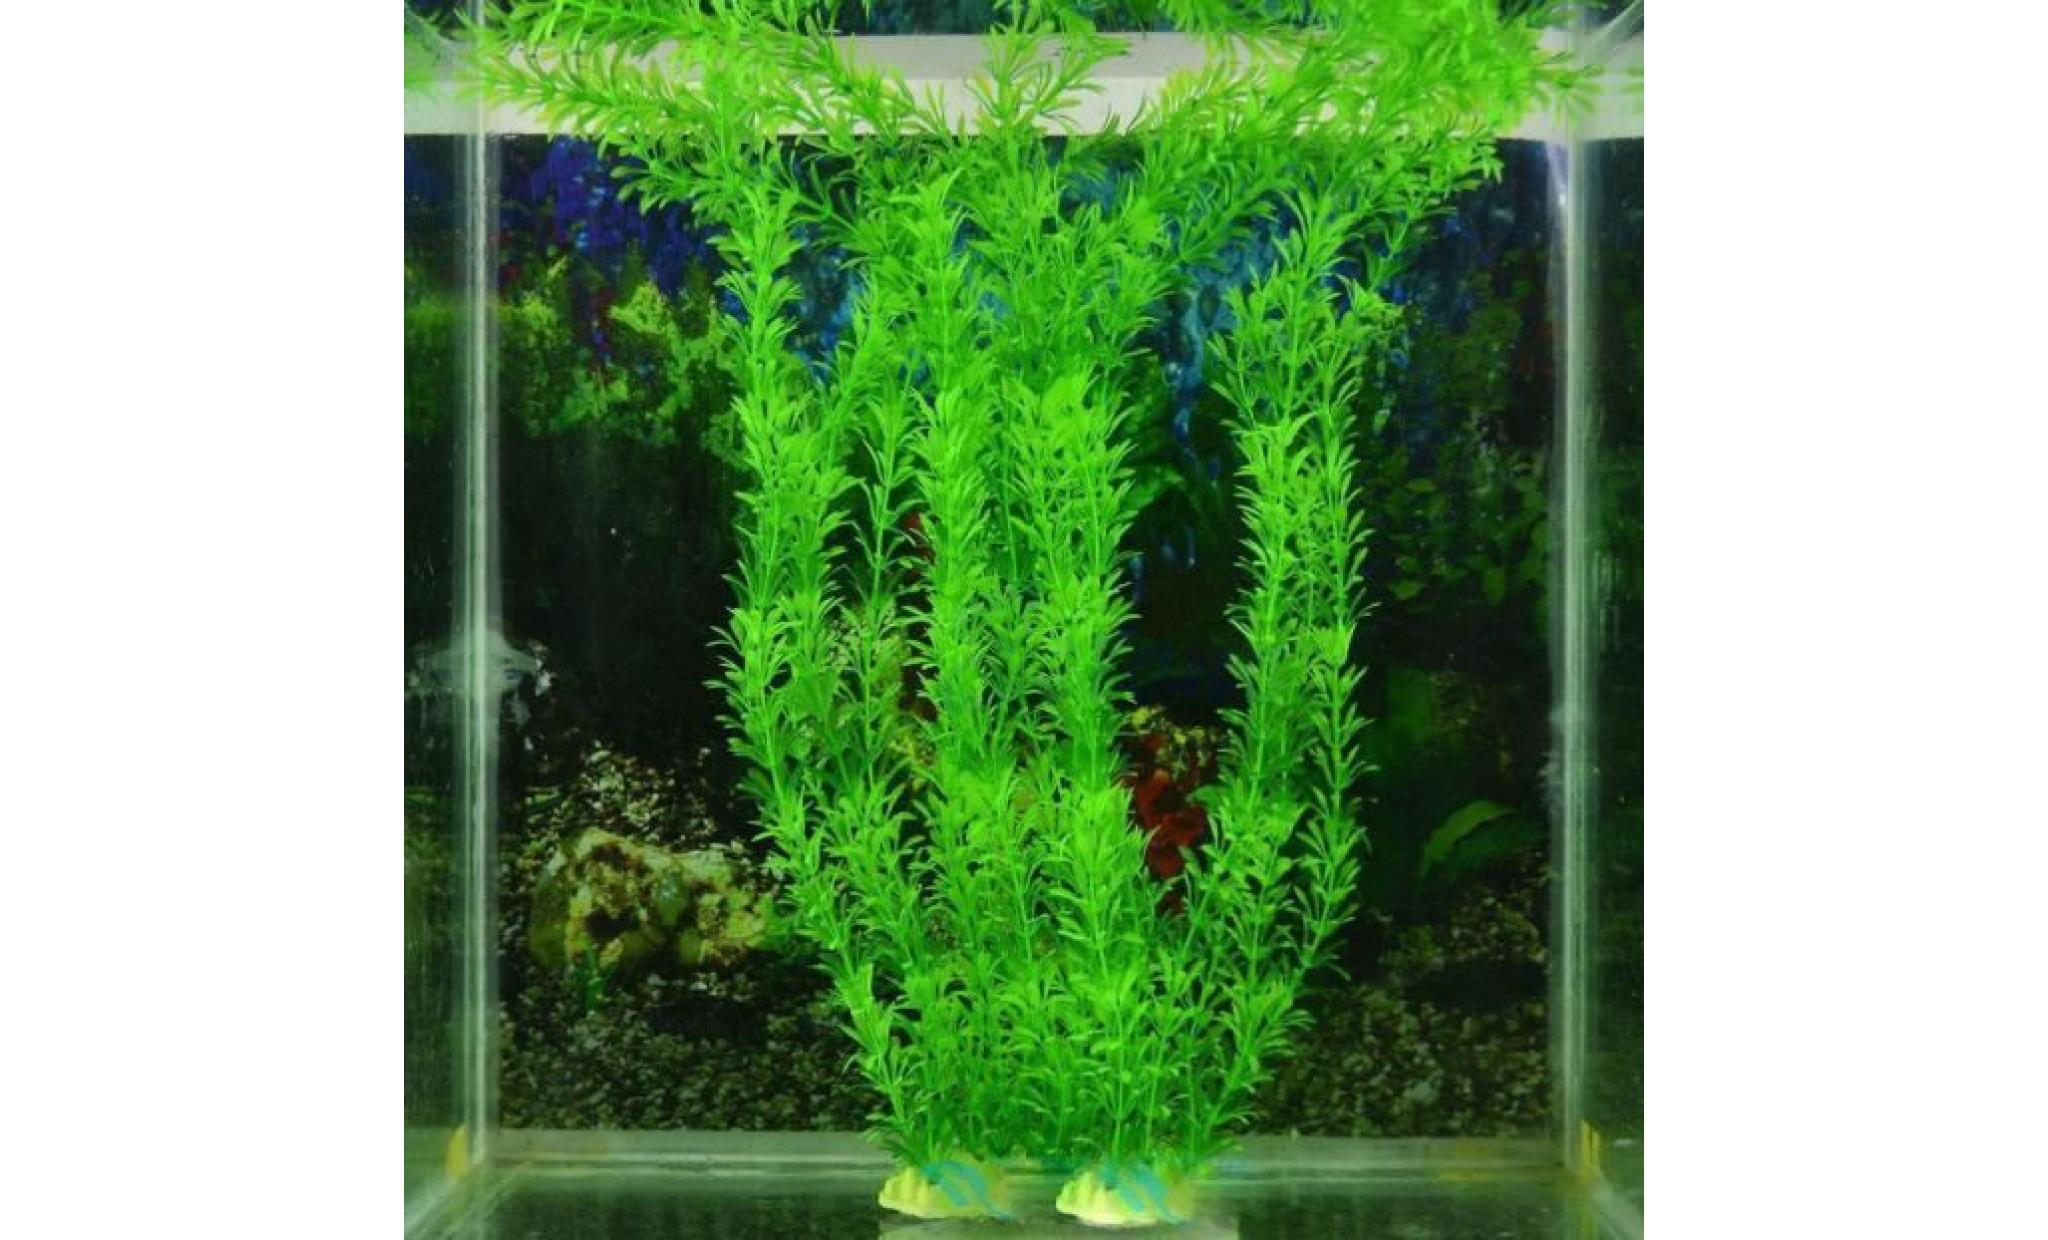 livraison gratuite 13 plastique gazon artificiel réservoir de poissons d'eau décoration ylc052